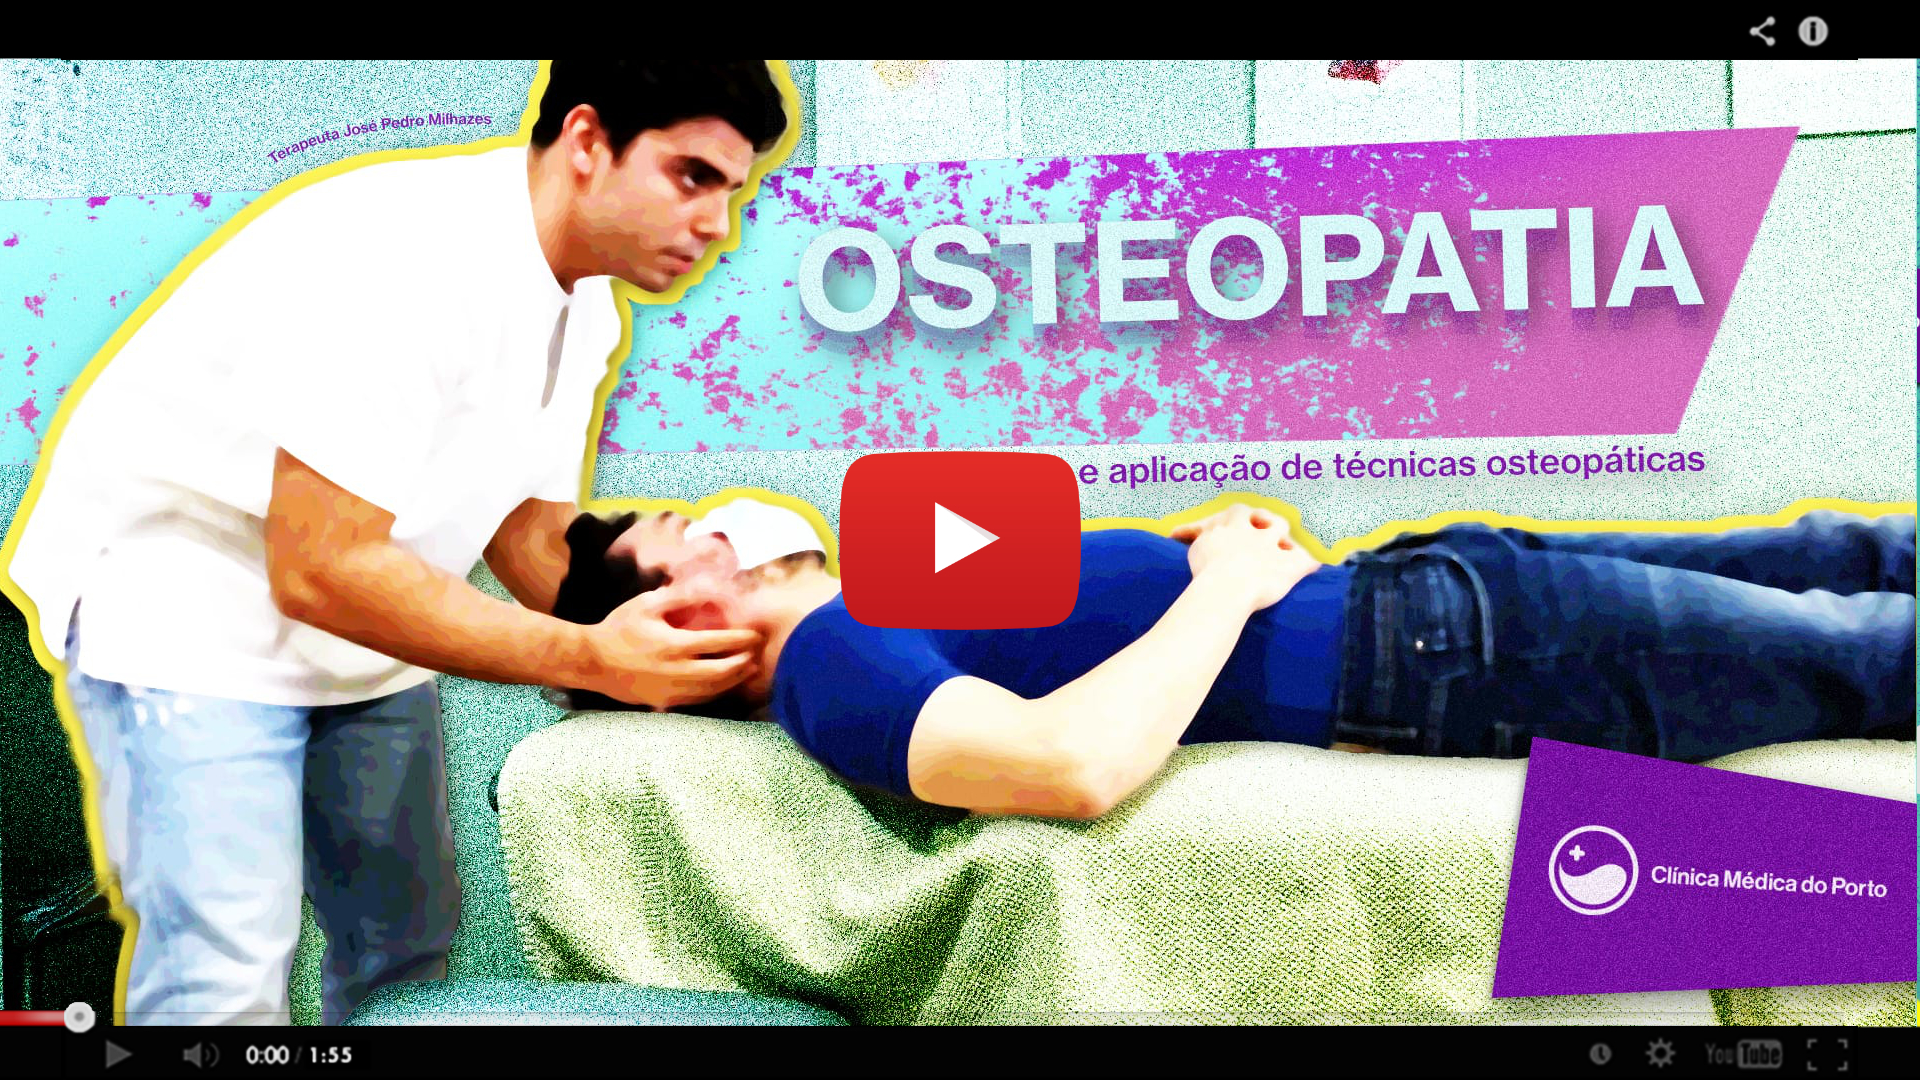 Acerca da Consulta de Osteopatia da Clínica Médica do Porto